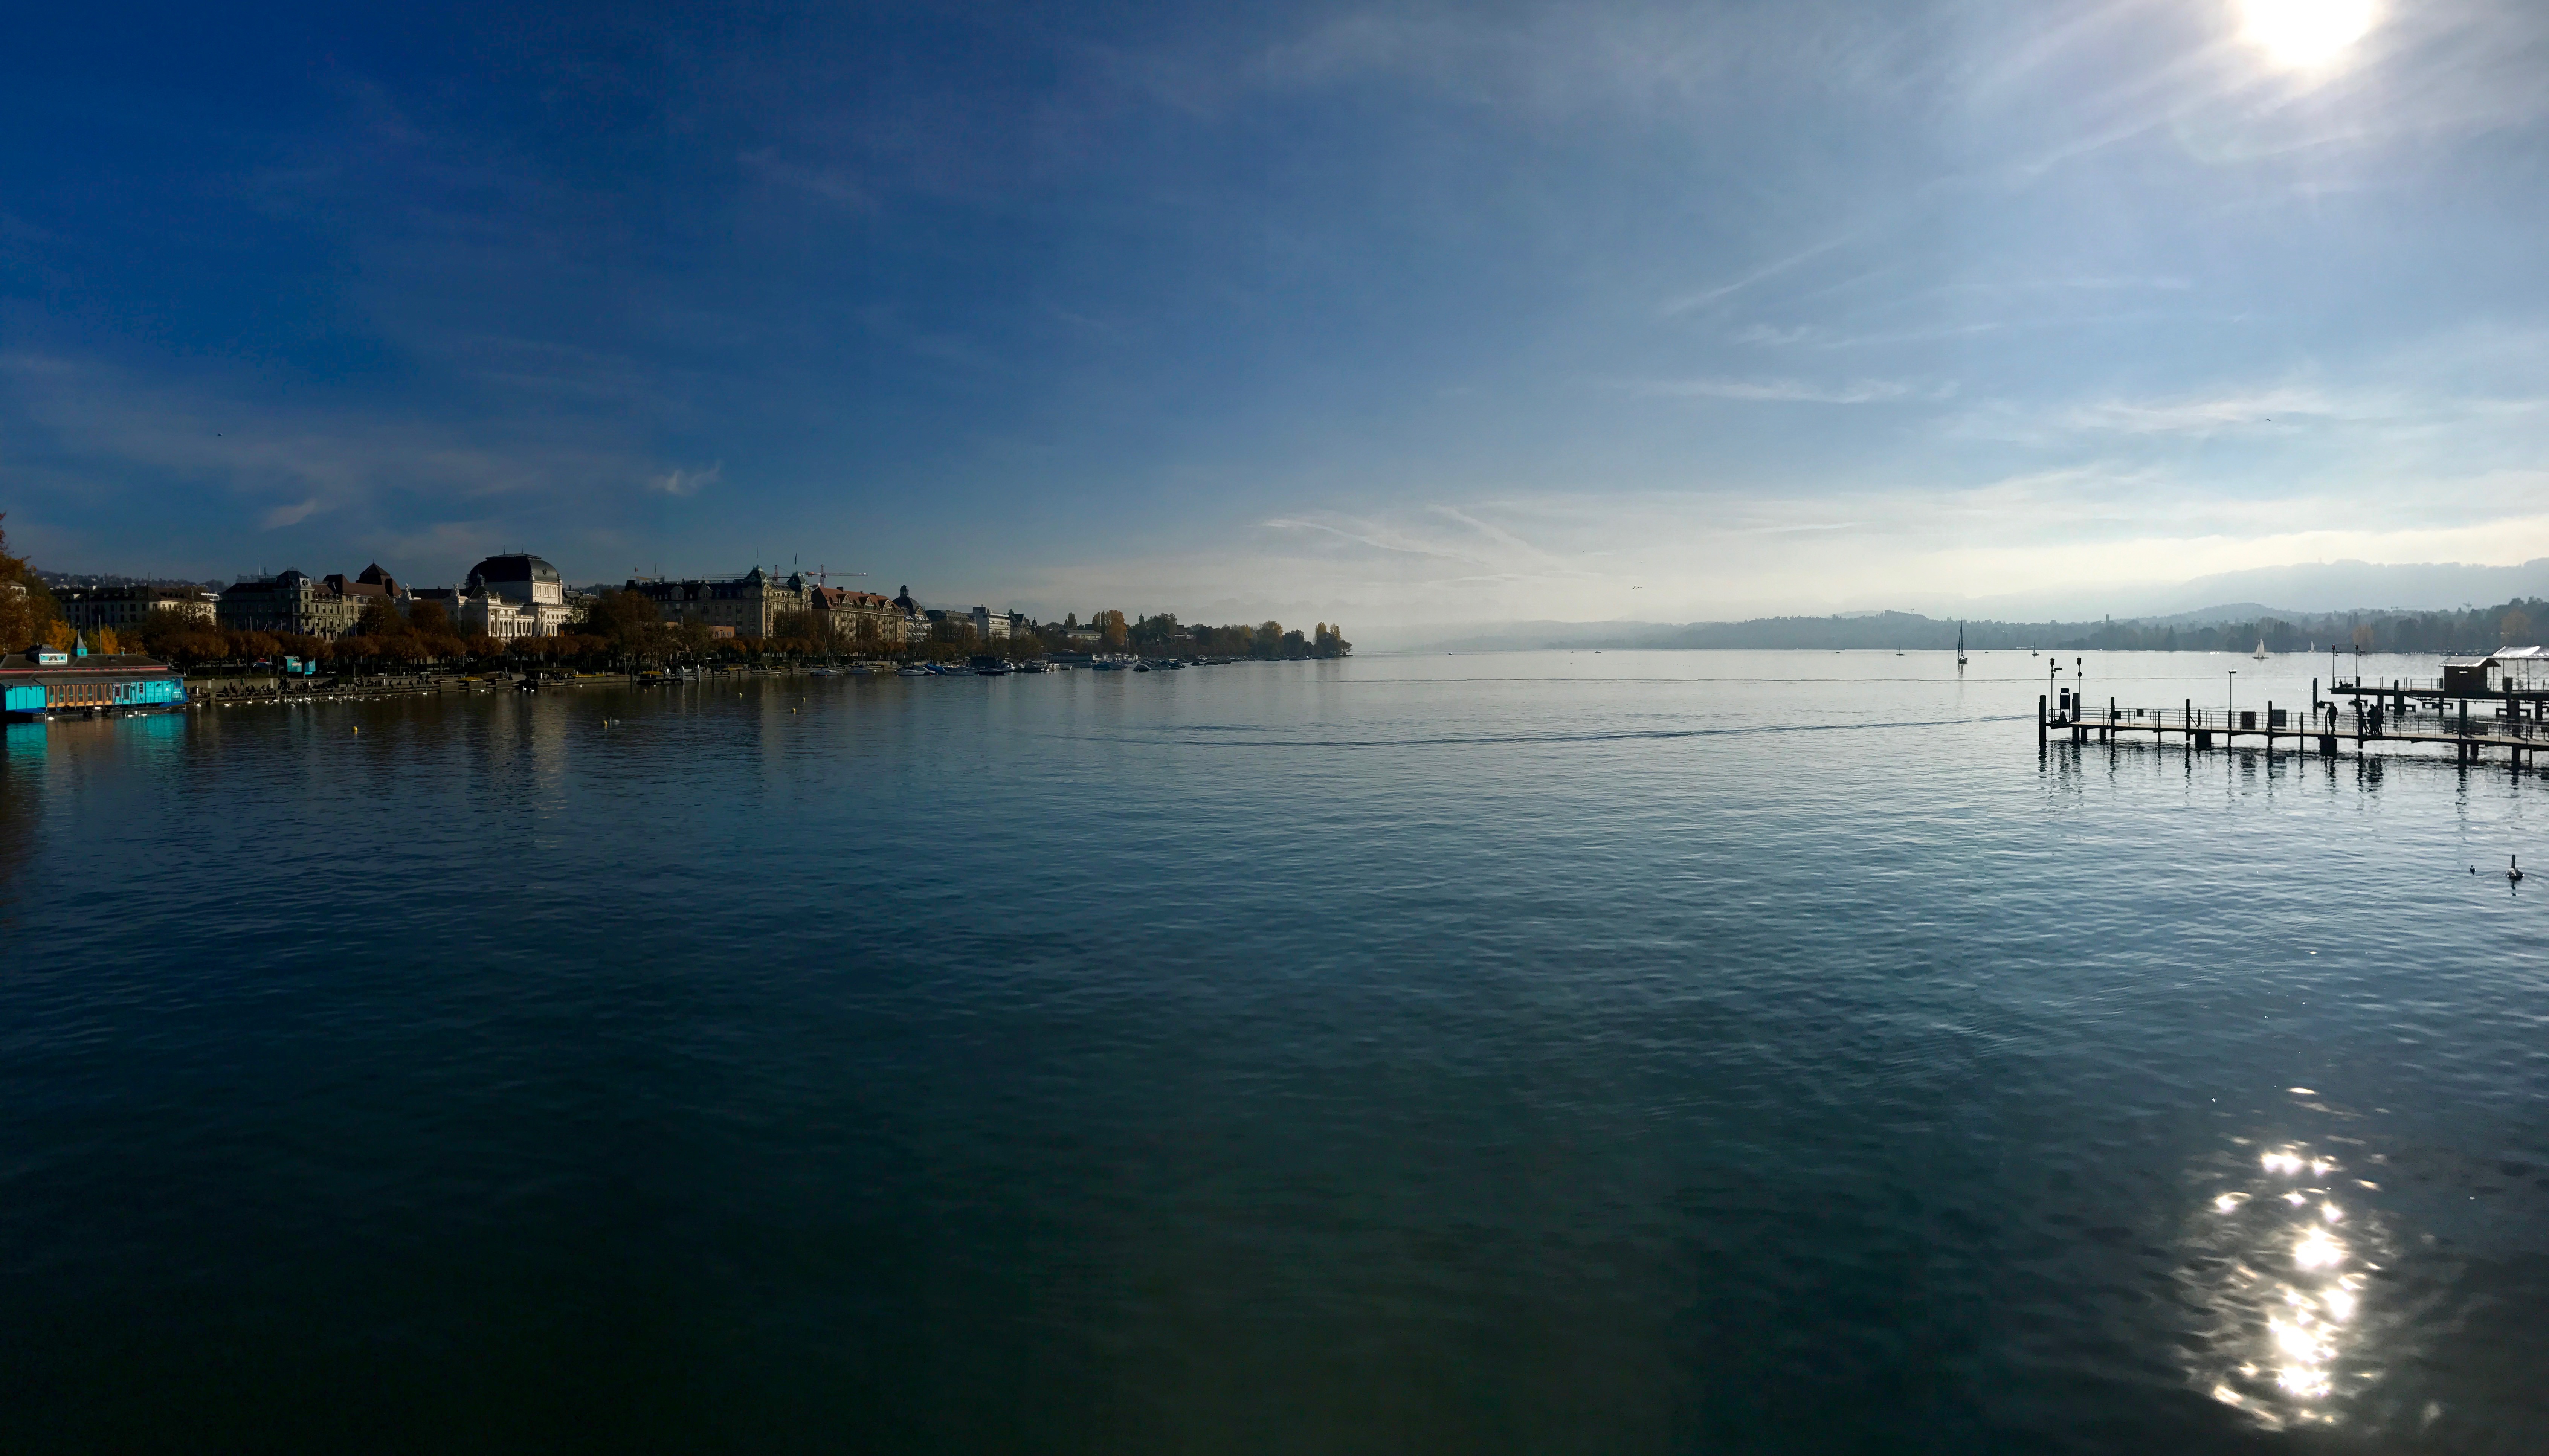 Quaibrücke, Quay Bridge, Zurich, Zürich, Lake Zurich